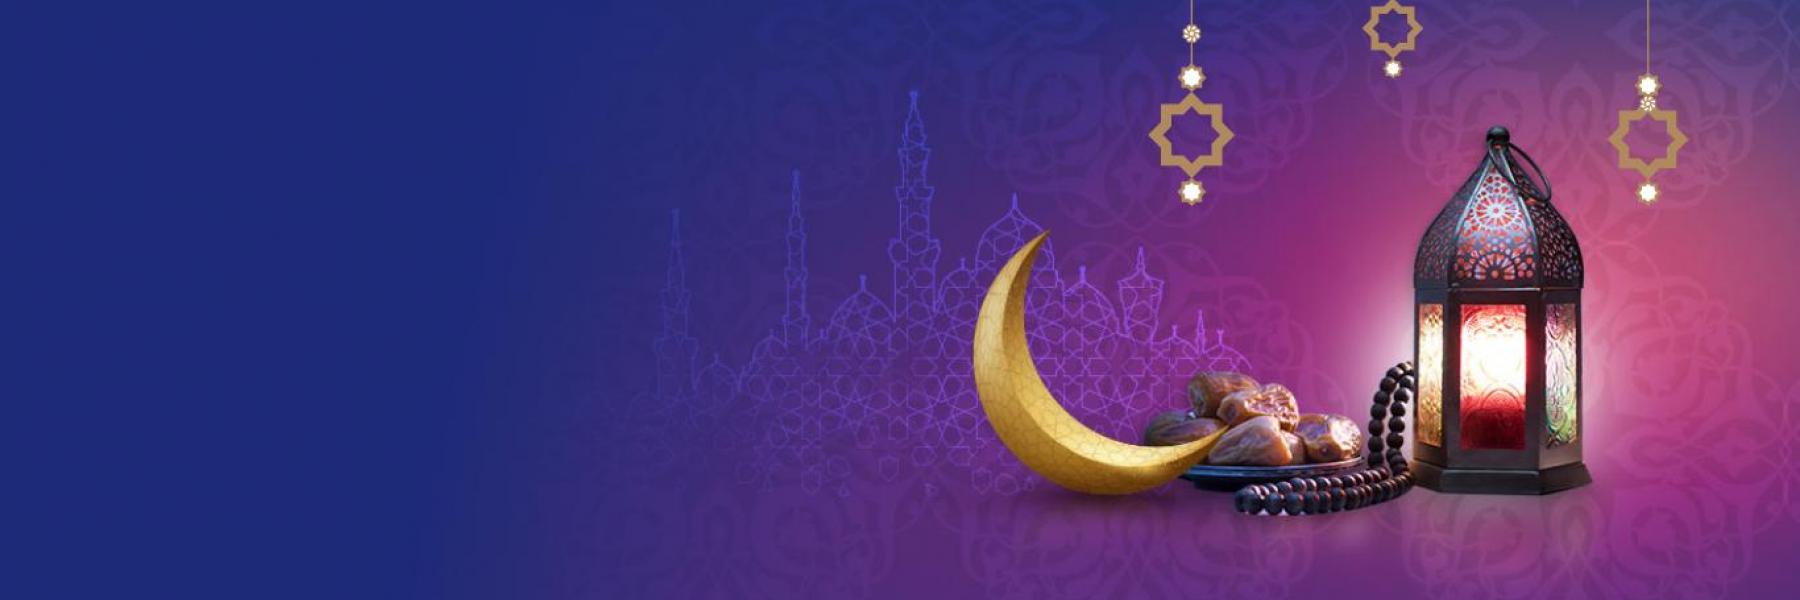 "بحبك يا رمضان"  يجمع المواهب الإبداعية في دبي في أجواء رمضاية ساحرة